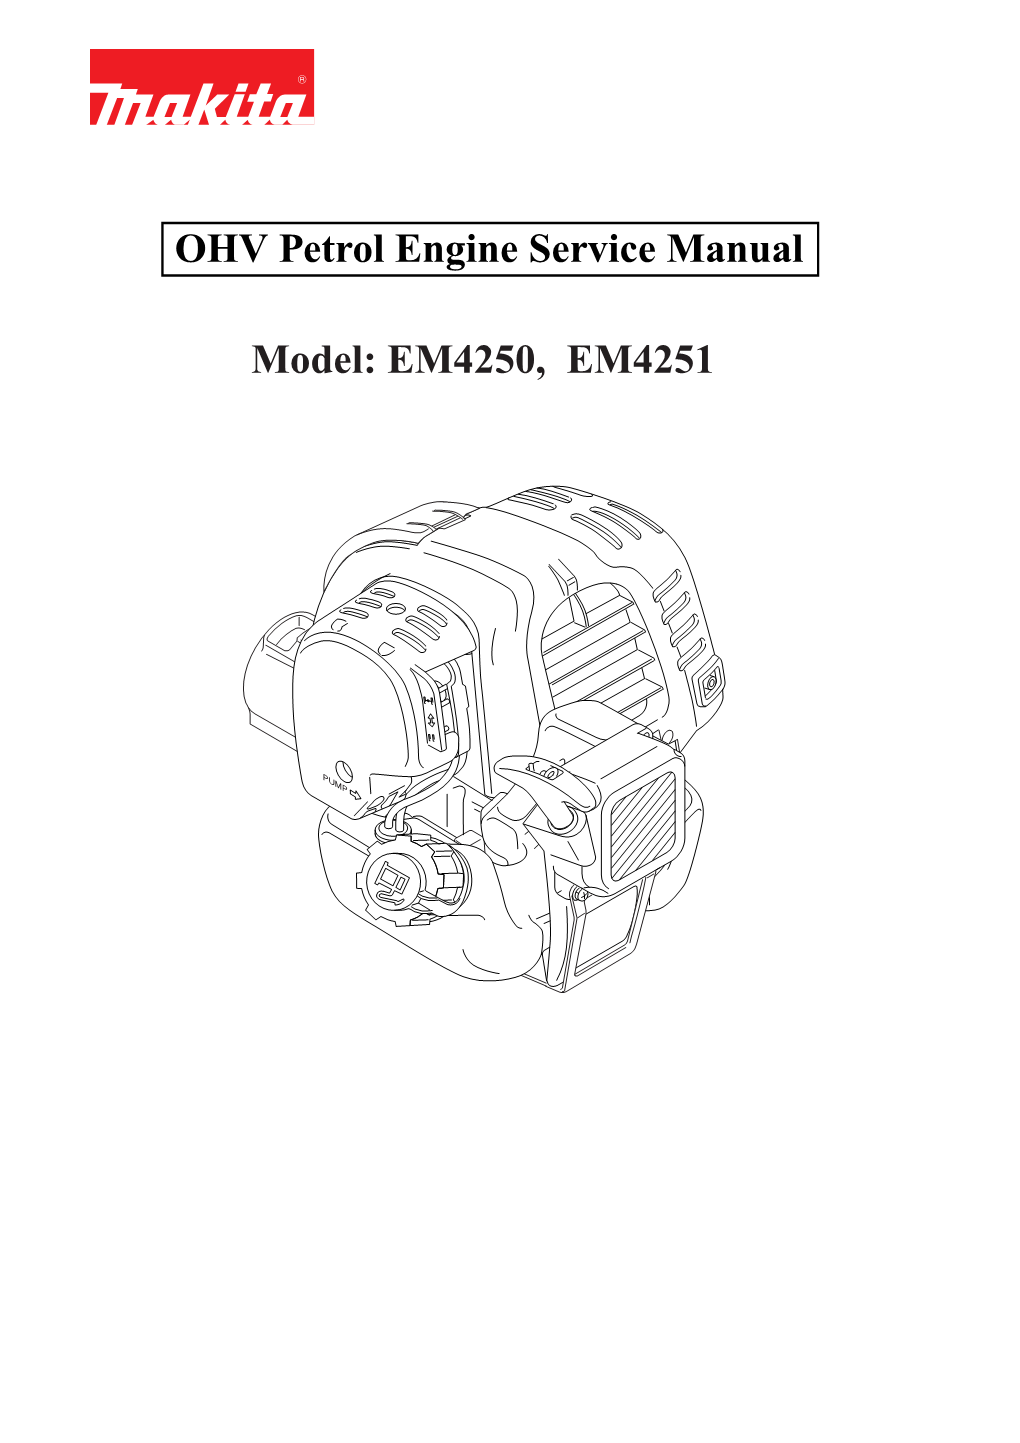 OHV Petrol Engine Service Manual Model: EM4250, EM4251